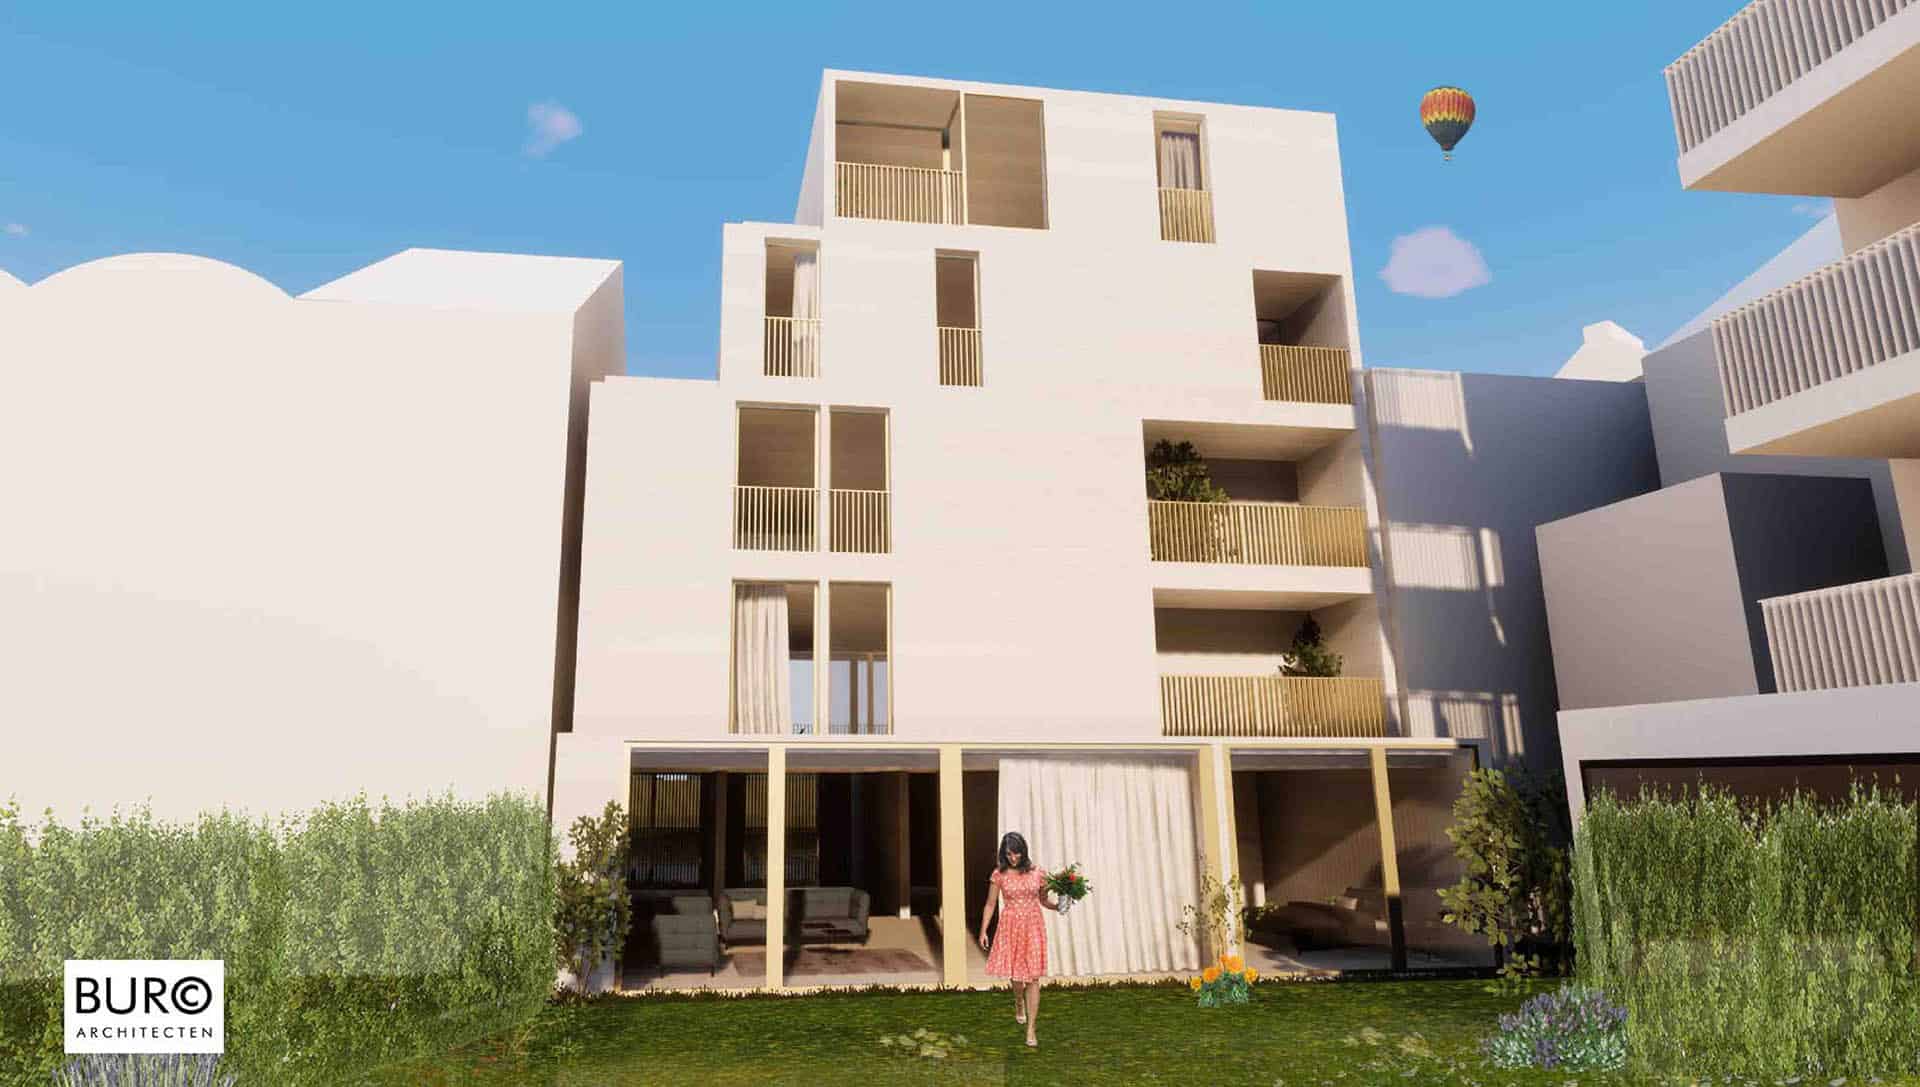 buroc-architecten-project-appartementen-6